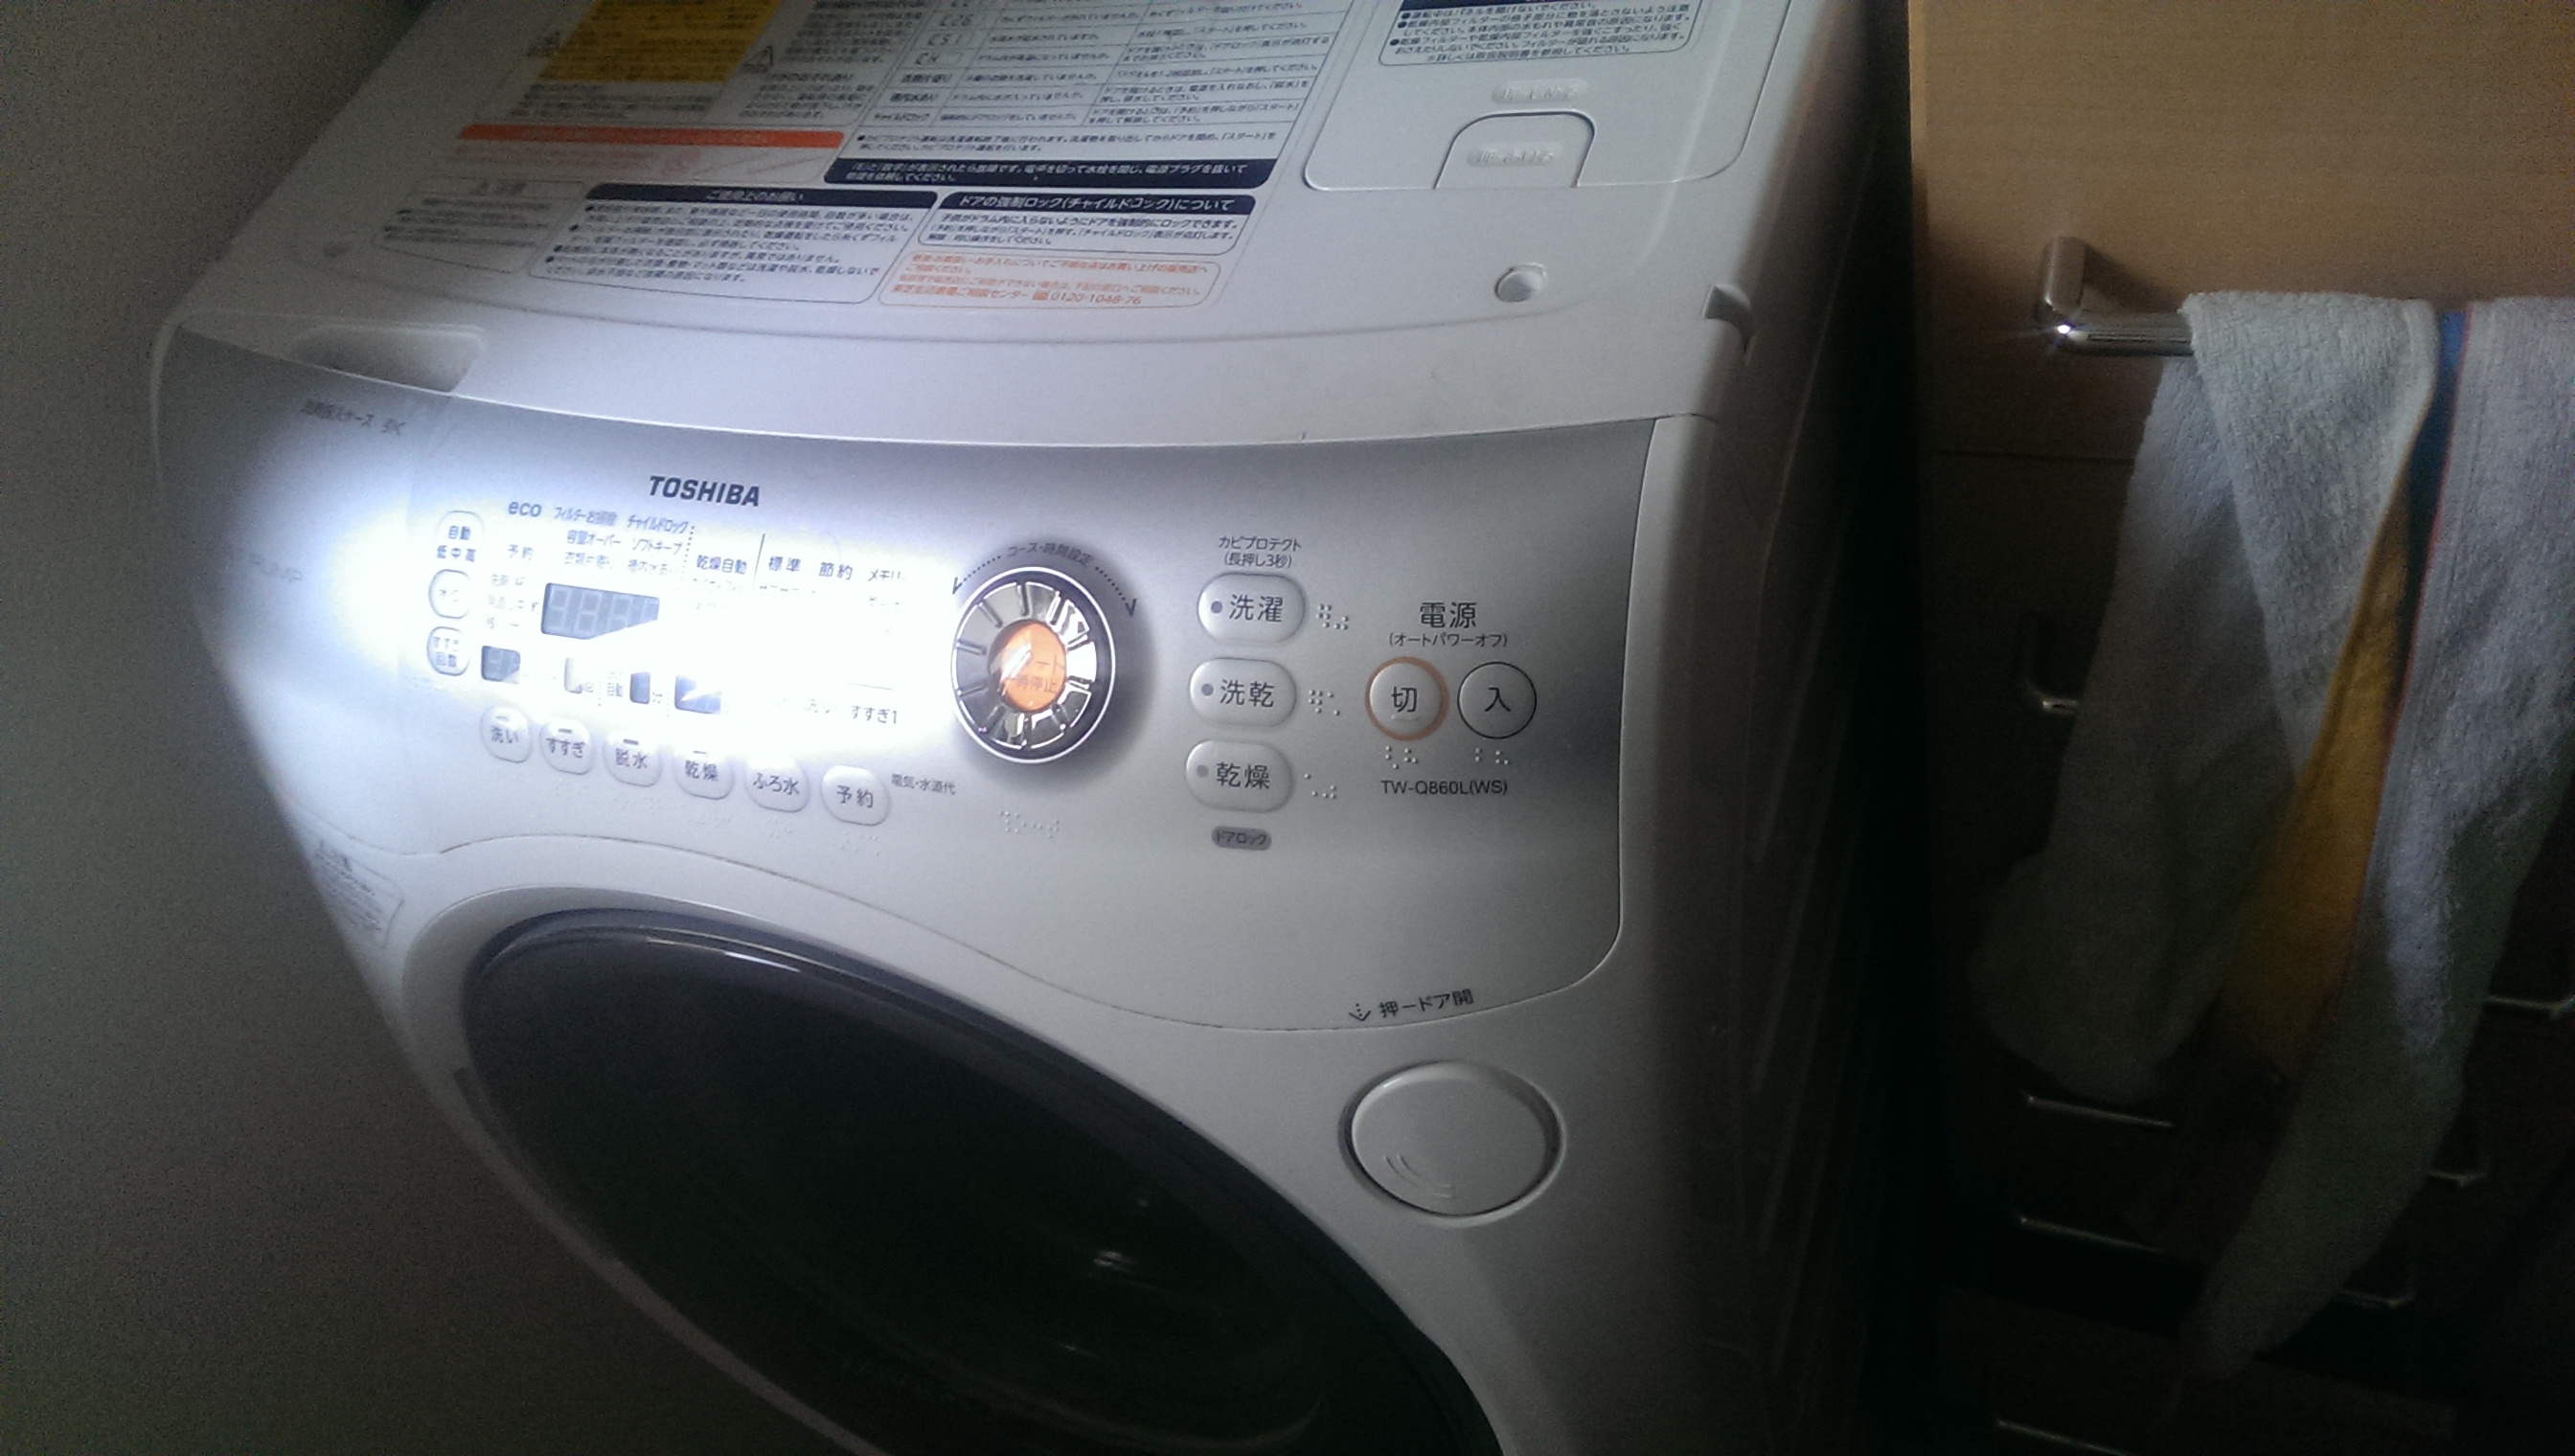 中川区 東芝製ドラム式洗濯乾燥機(TWQ860L)乾燥不可 | 名古屋の家電